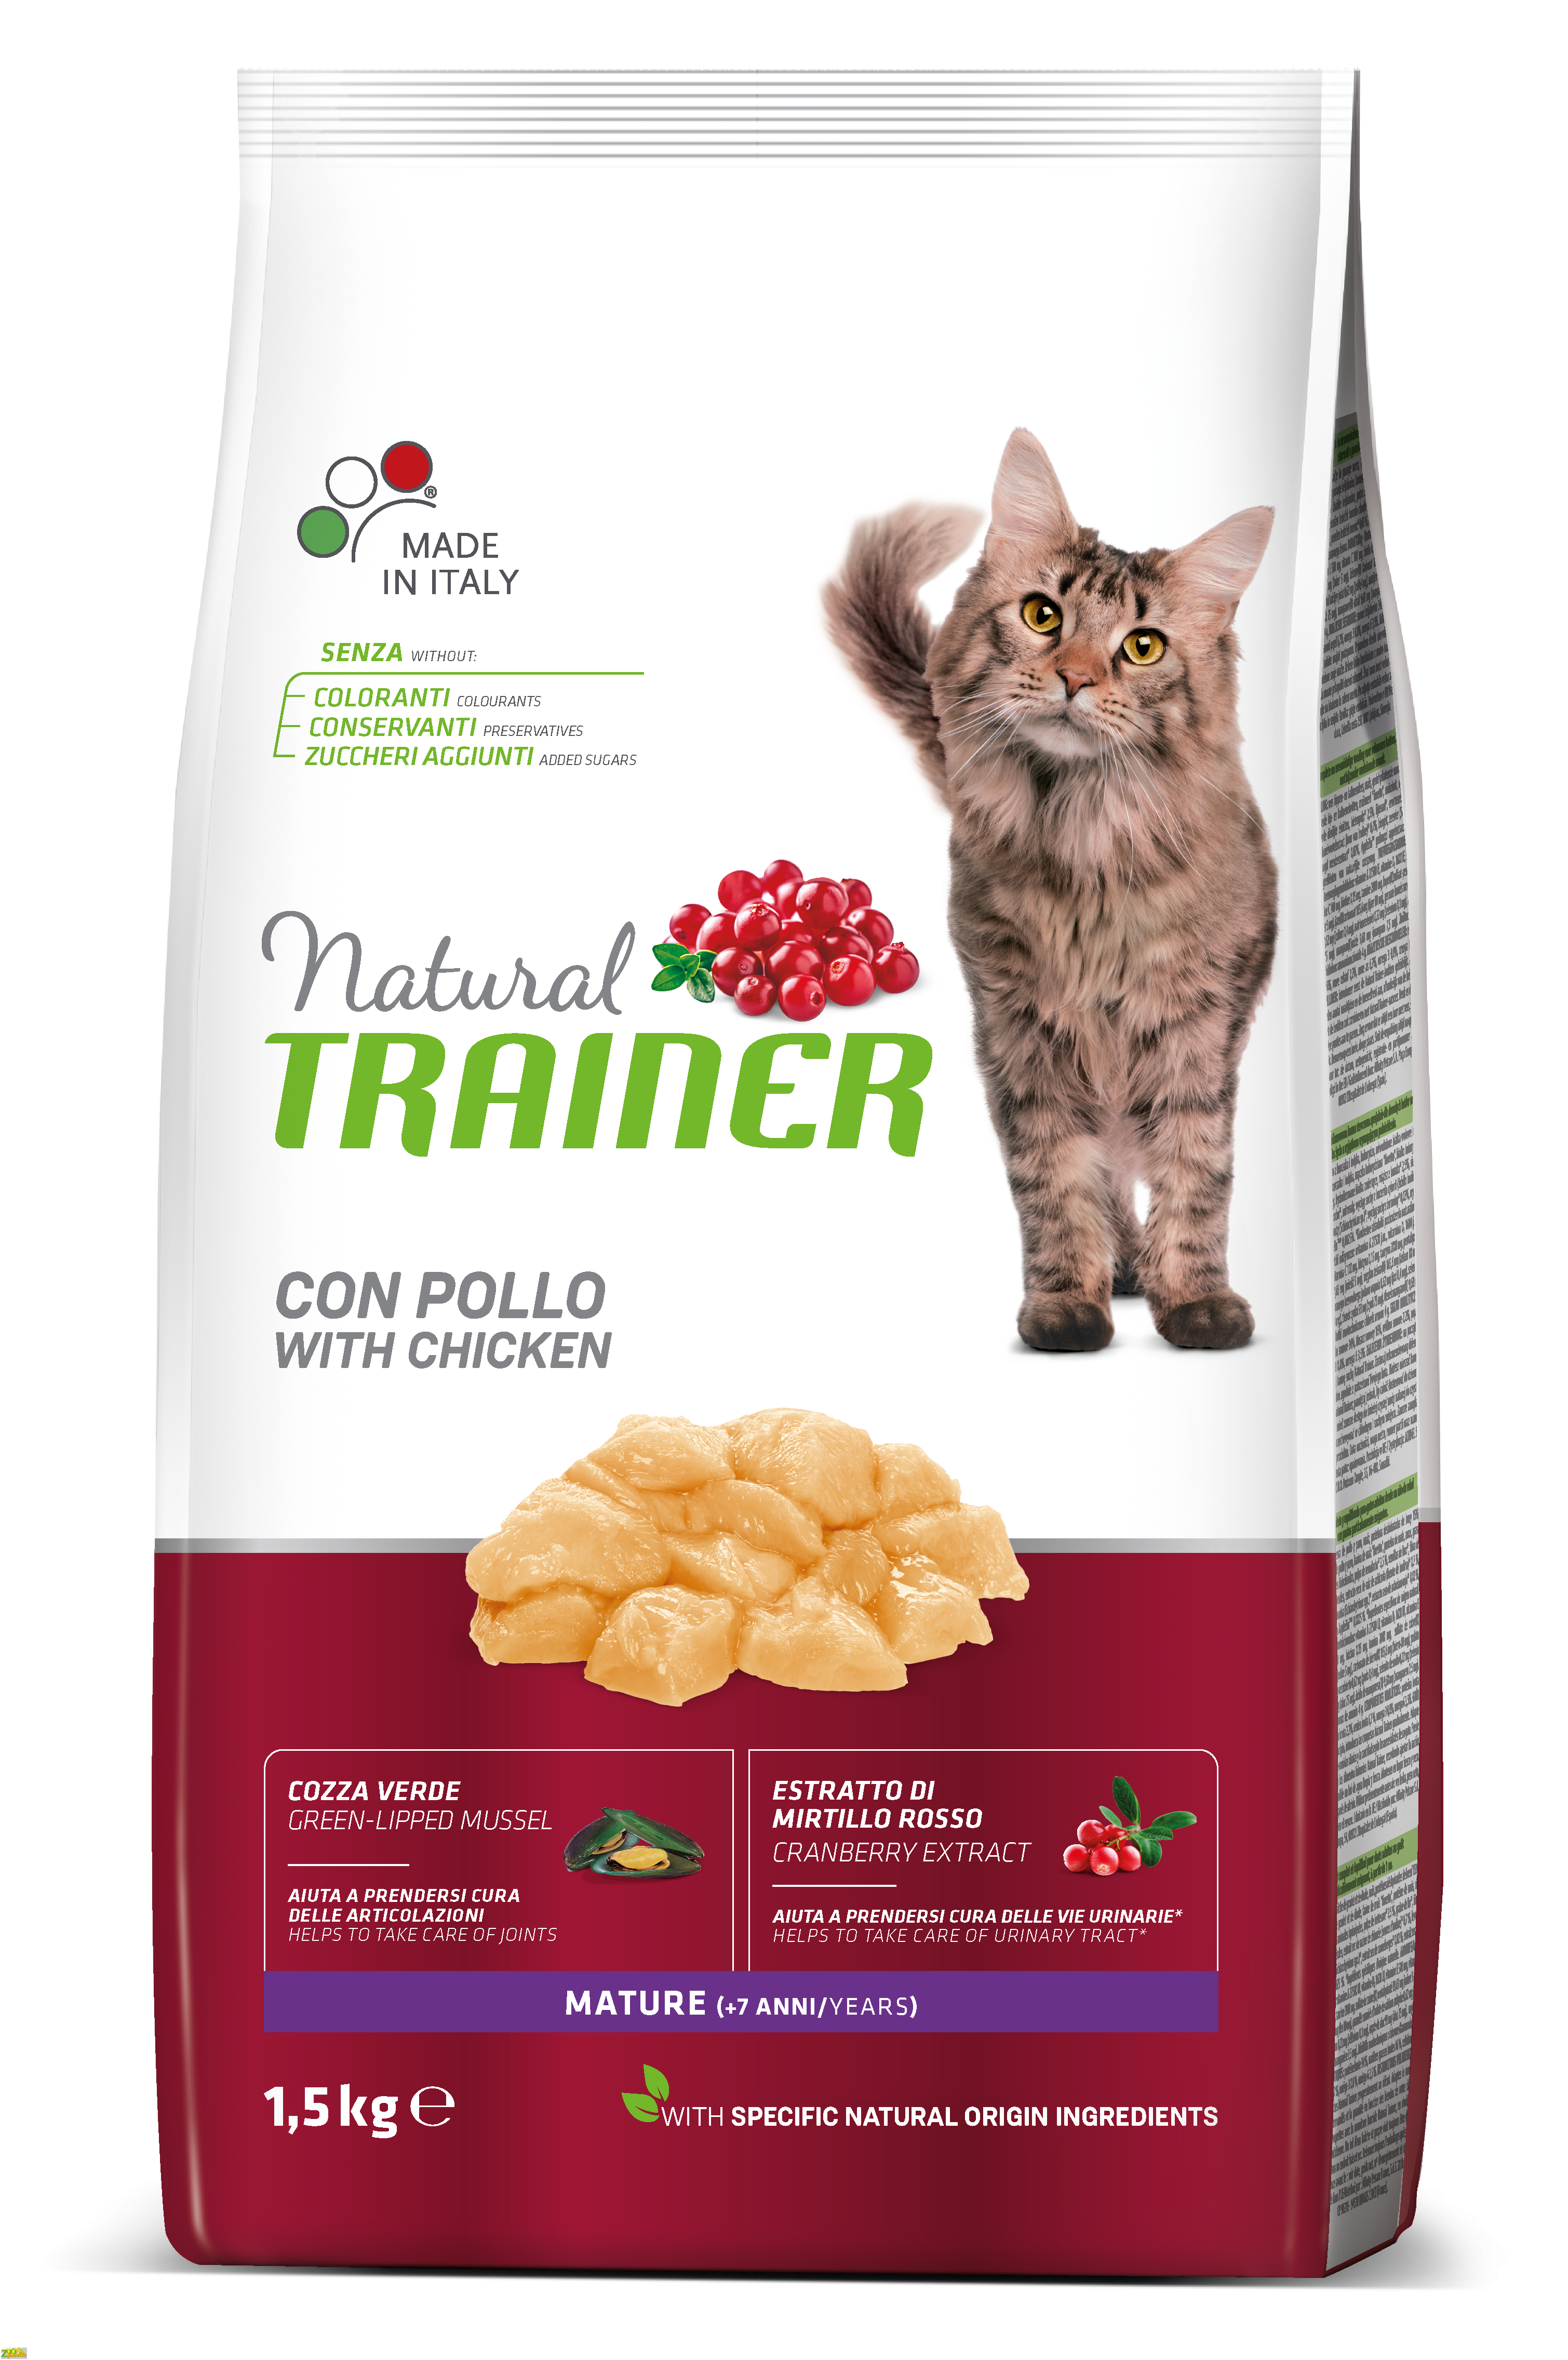 TRAINER NATURAL Super Premium Mature with chicken Трейнер сбалансированный корм для зрелых кошек в возрасте от 7 лет с курицей